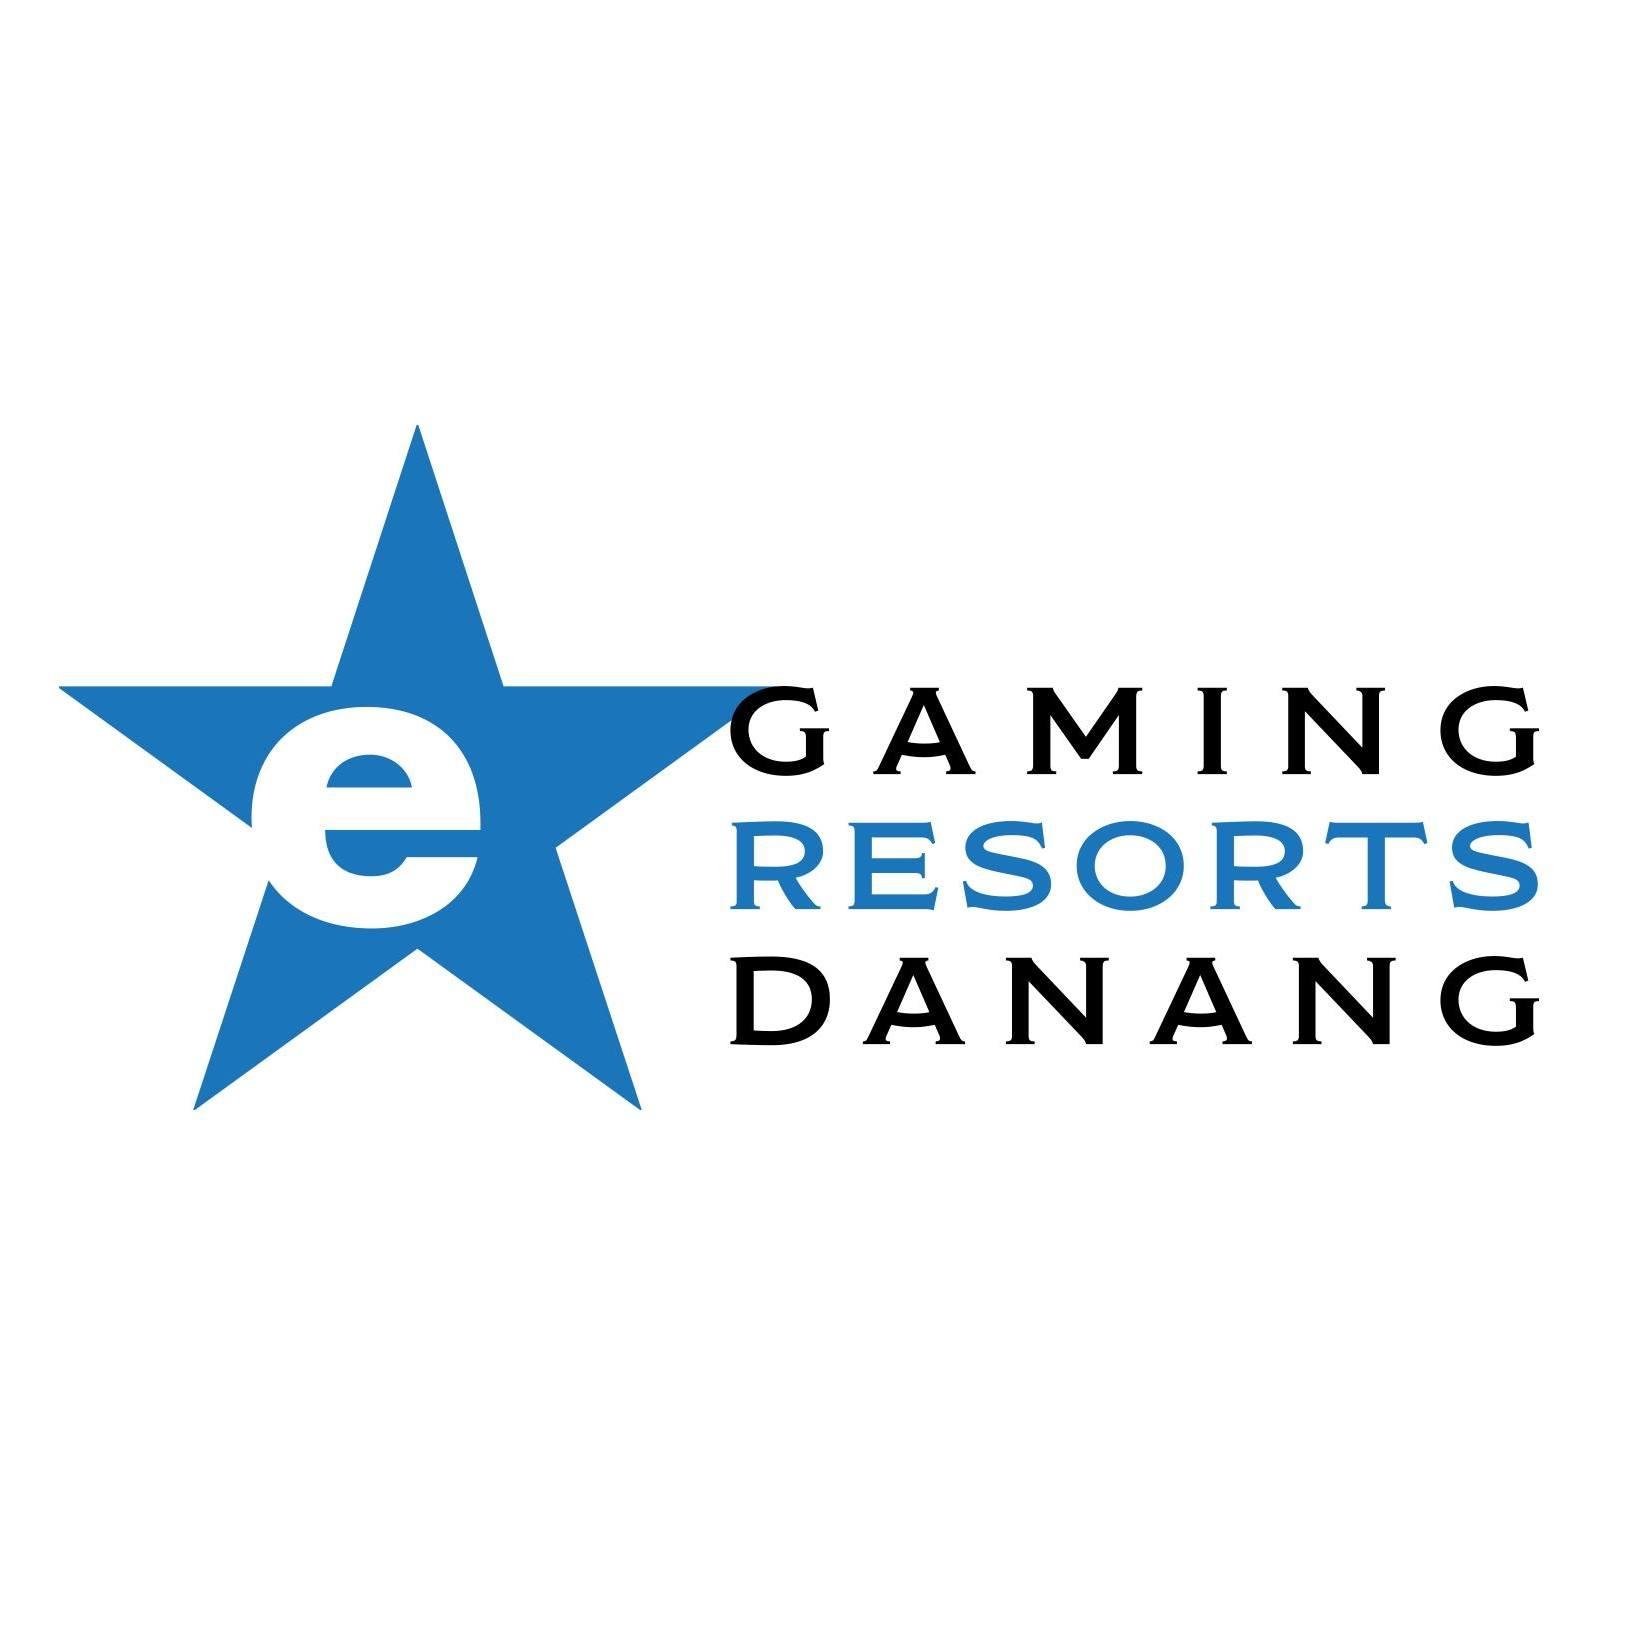 E-Gaming Resorts Danang